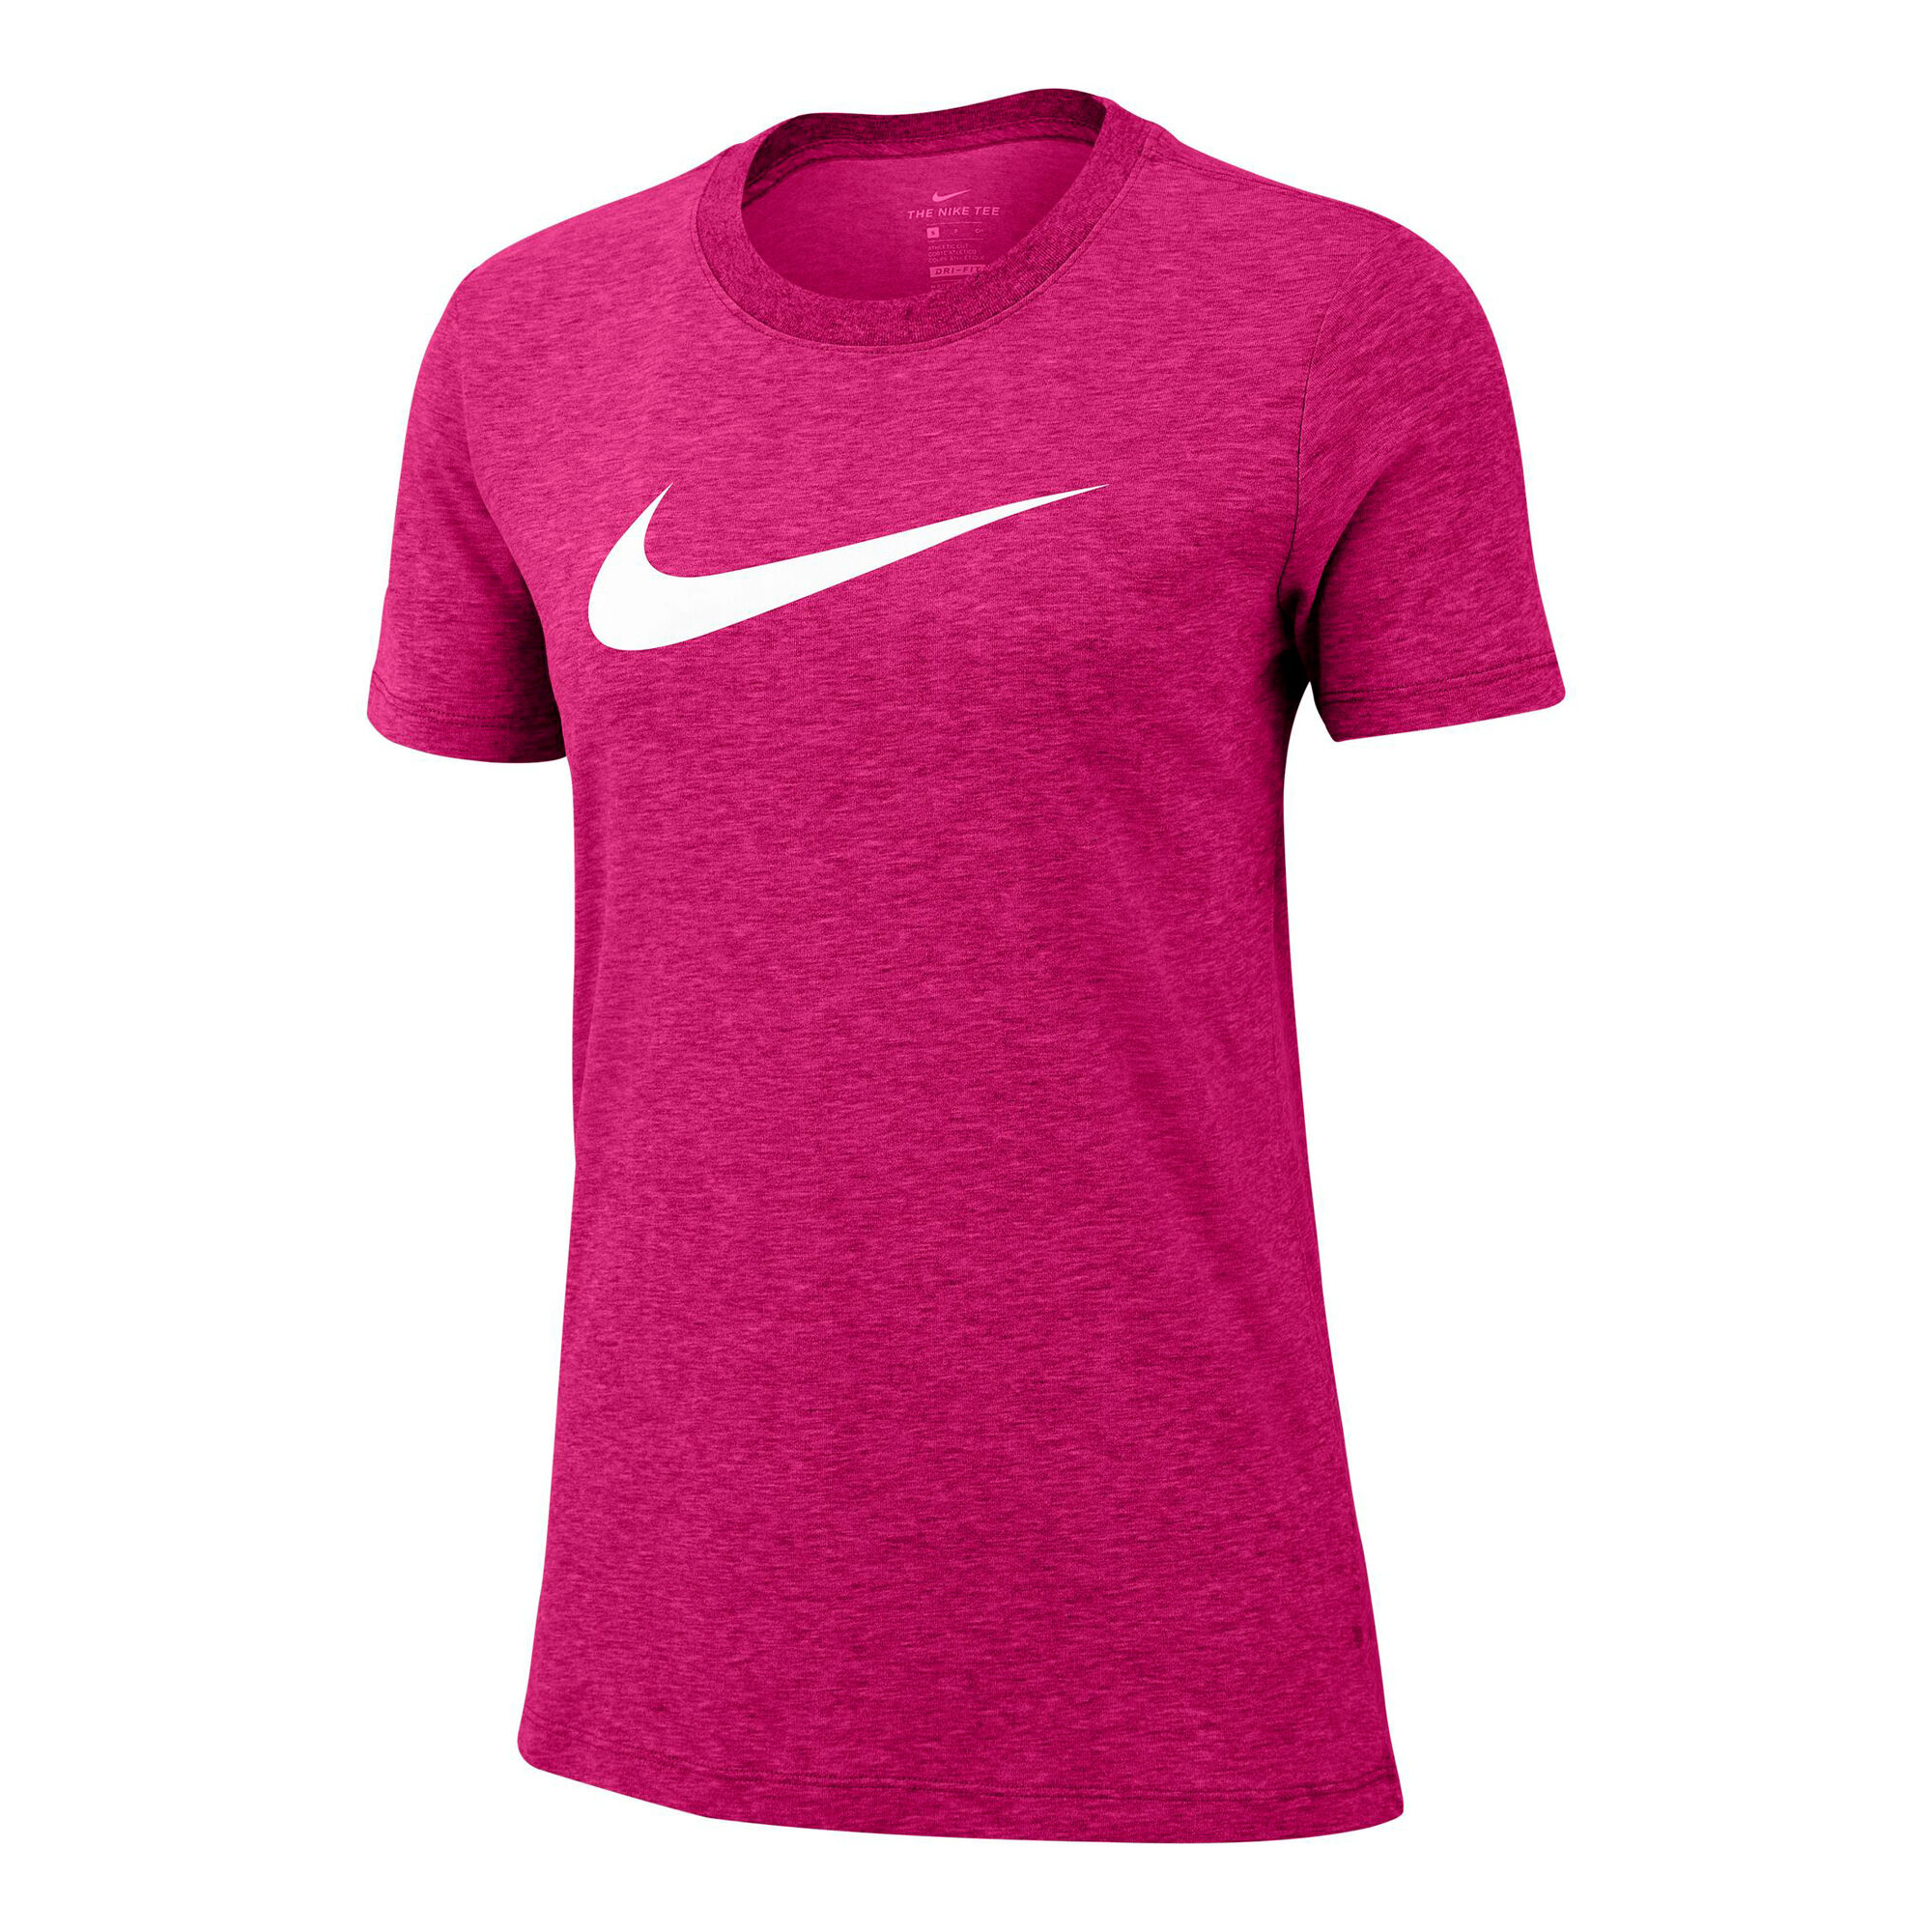 Buy Nike Dri-Fit T-Shirt Women Pink, White online | Tennis Point UK